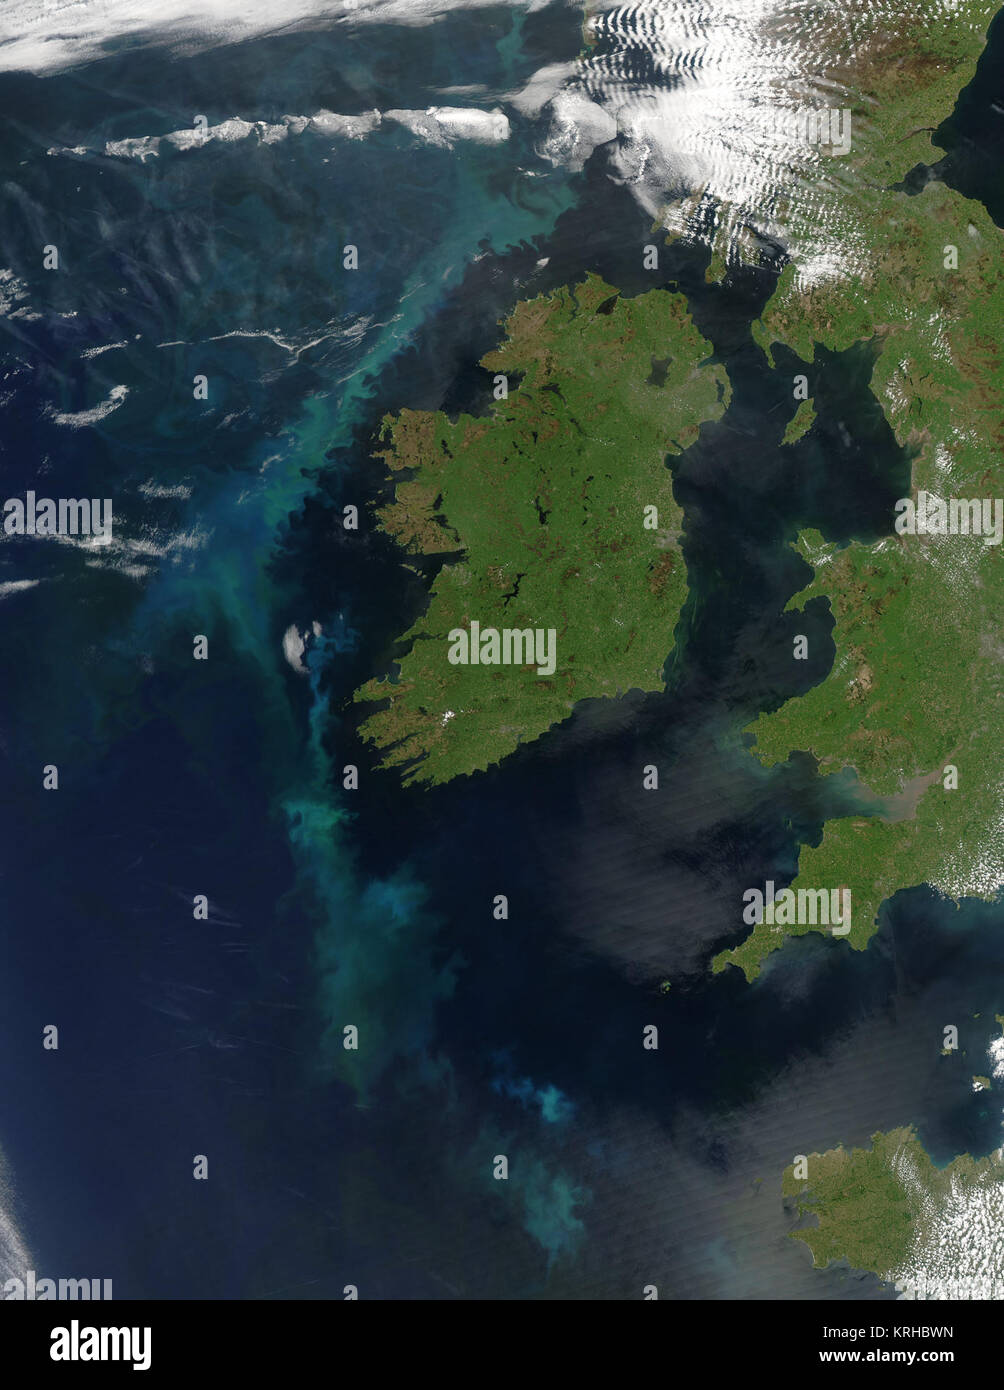 Des nuages tourbillonnants de bleu et vert allumé l'océan Atlantique à l'ouest de l'Irlande le 2 juin 2006, lorsque le spectromètre imageur à résolution moyenne (MODIS) modis.gsfc.nasa.gov aqua.nasa.gov/ la NASA sur le satellite Aqua capturé cette image. L'océan est normalement noir en vrai-couleurs, photo-comme les images satellite comme celle-ci, mais une grande floraison du phytoplancton, permis à l'eau son bleu et verts. Le phytoplancton microscopique sont des plantes qui poussent dans les eaux de surface par le soleil de l'océan. Lorsque suffisamment de plantes poussent dans un endroit, la floraison peut être vu à partir de l'espace. En plus de la coloration oc Banque D'Images